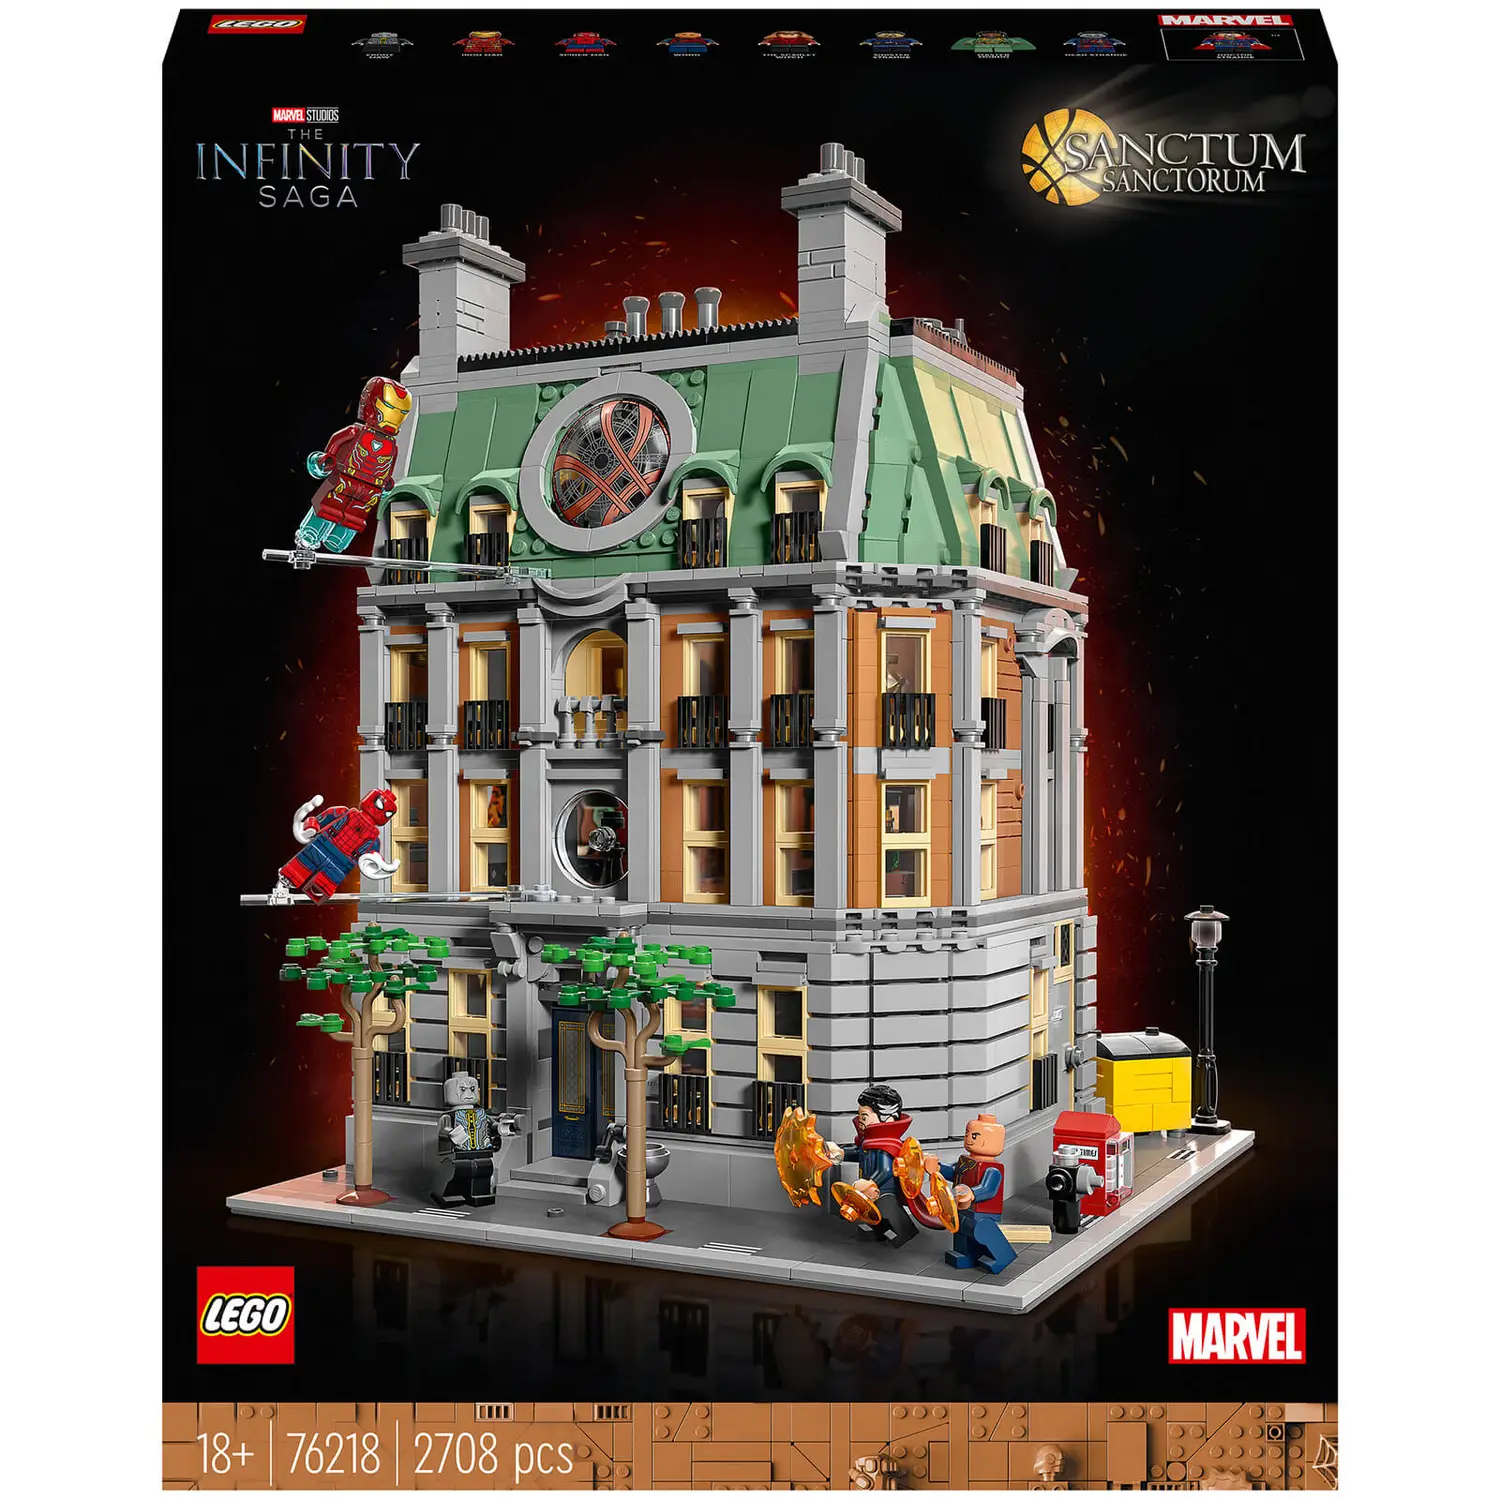 LEGO 乐高 超级英雄系列 76218 奇异博士 至圣所